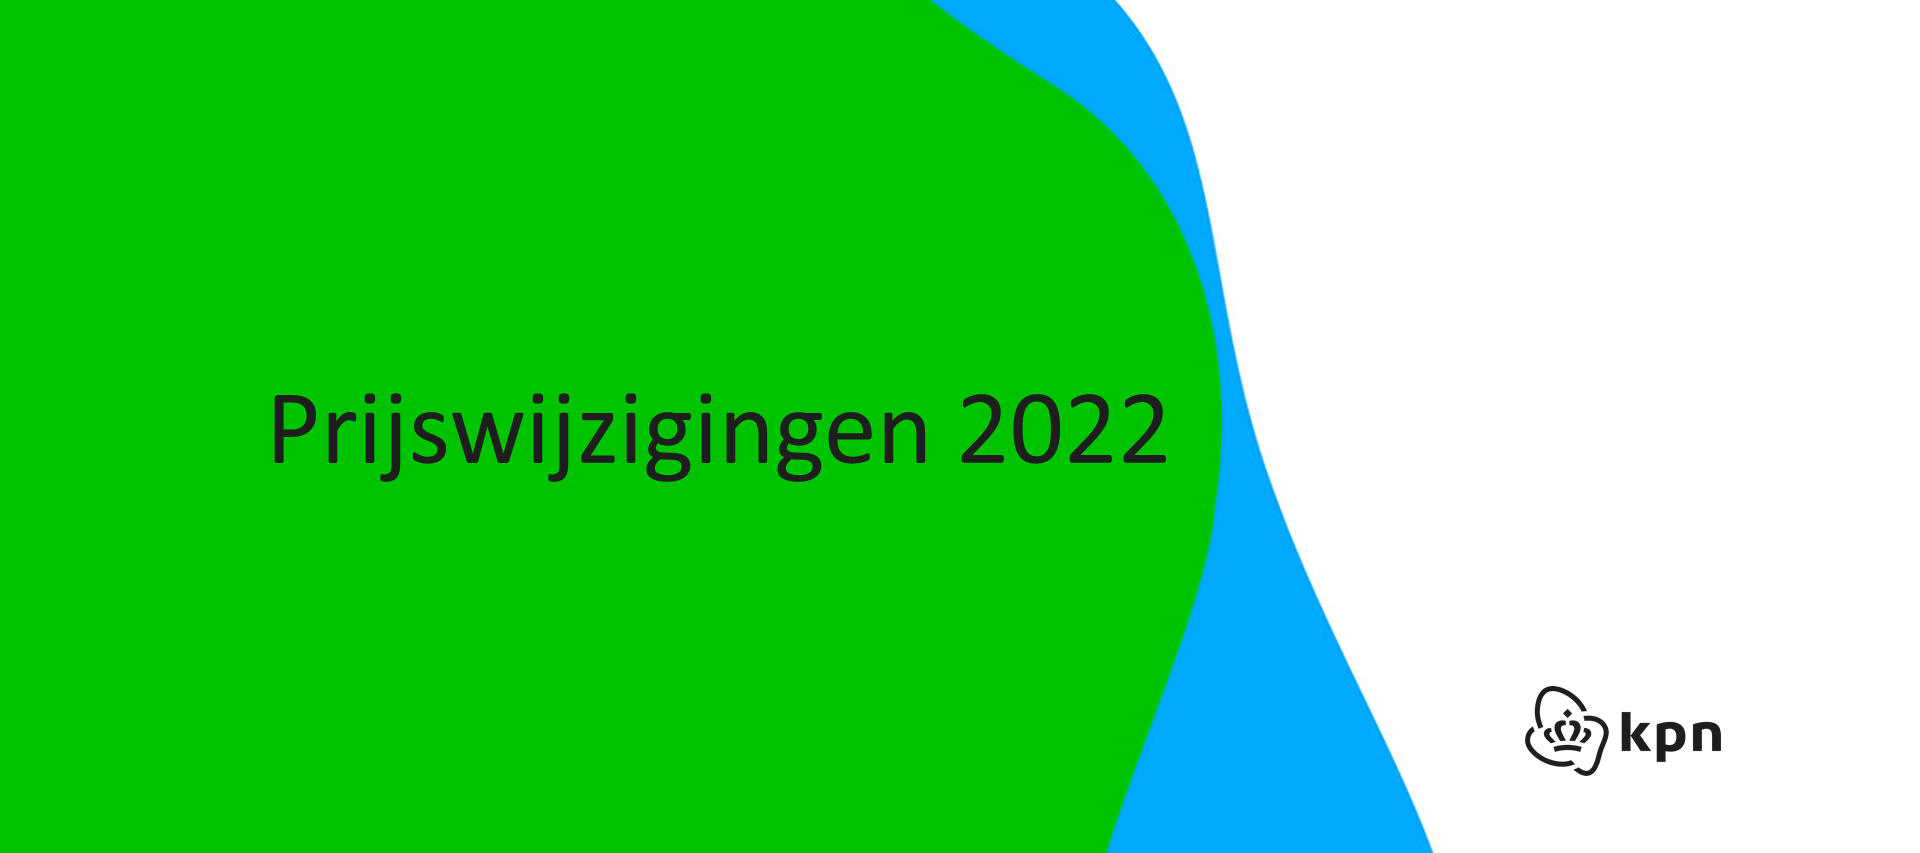 Prijswijzigingen KPN 2022